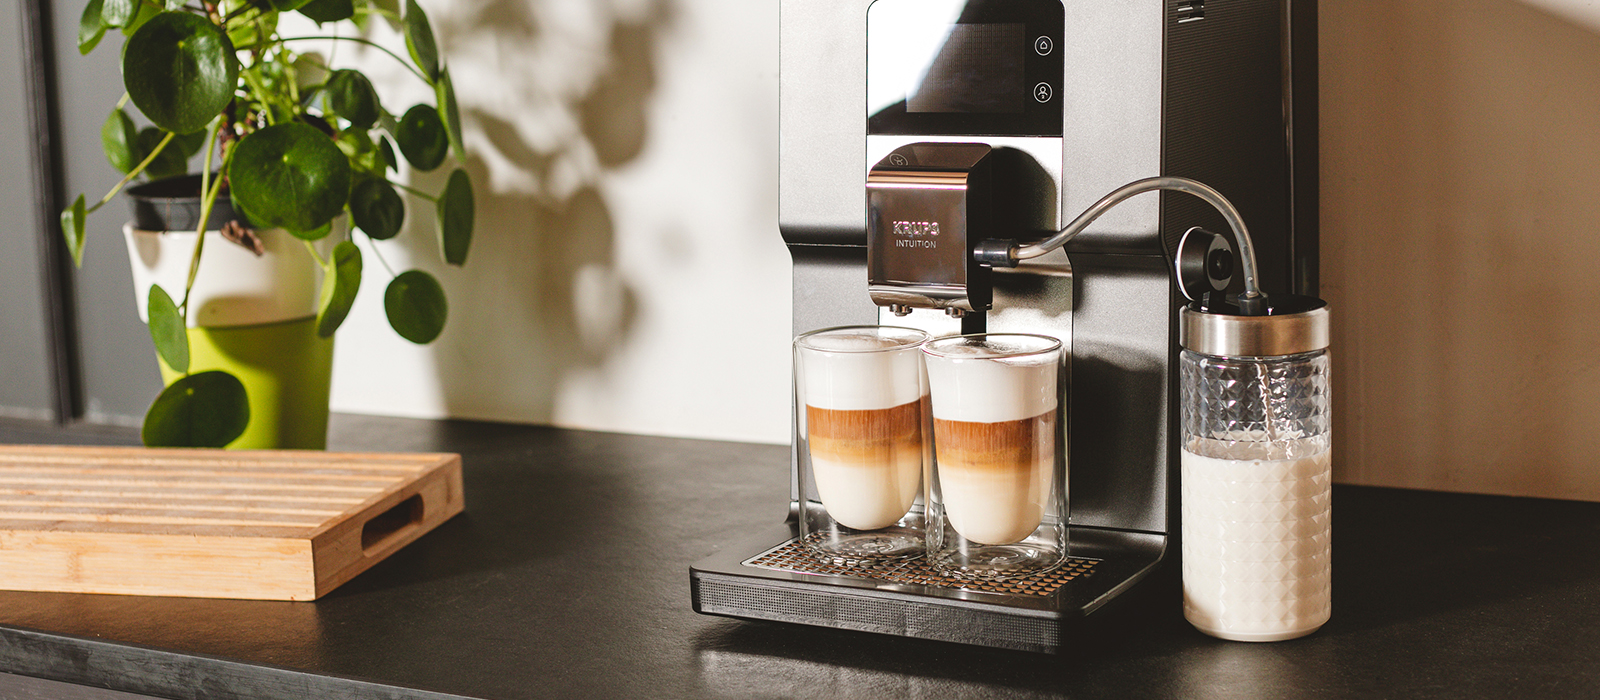 Pastilles de nettoyage pour machine à café - compatible avec Krups